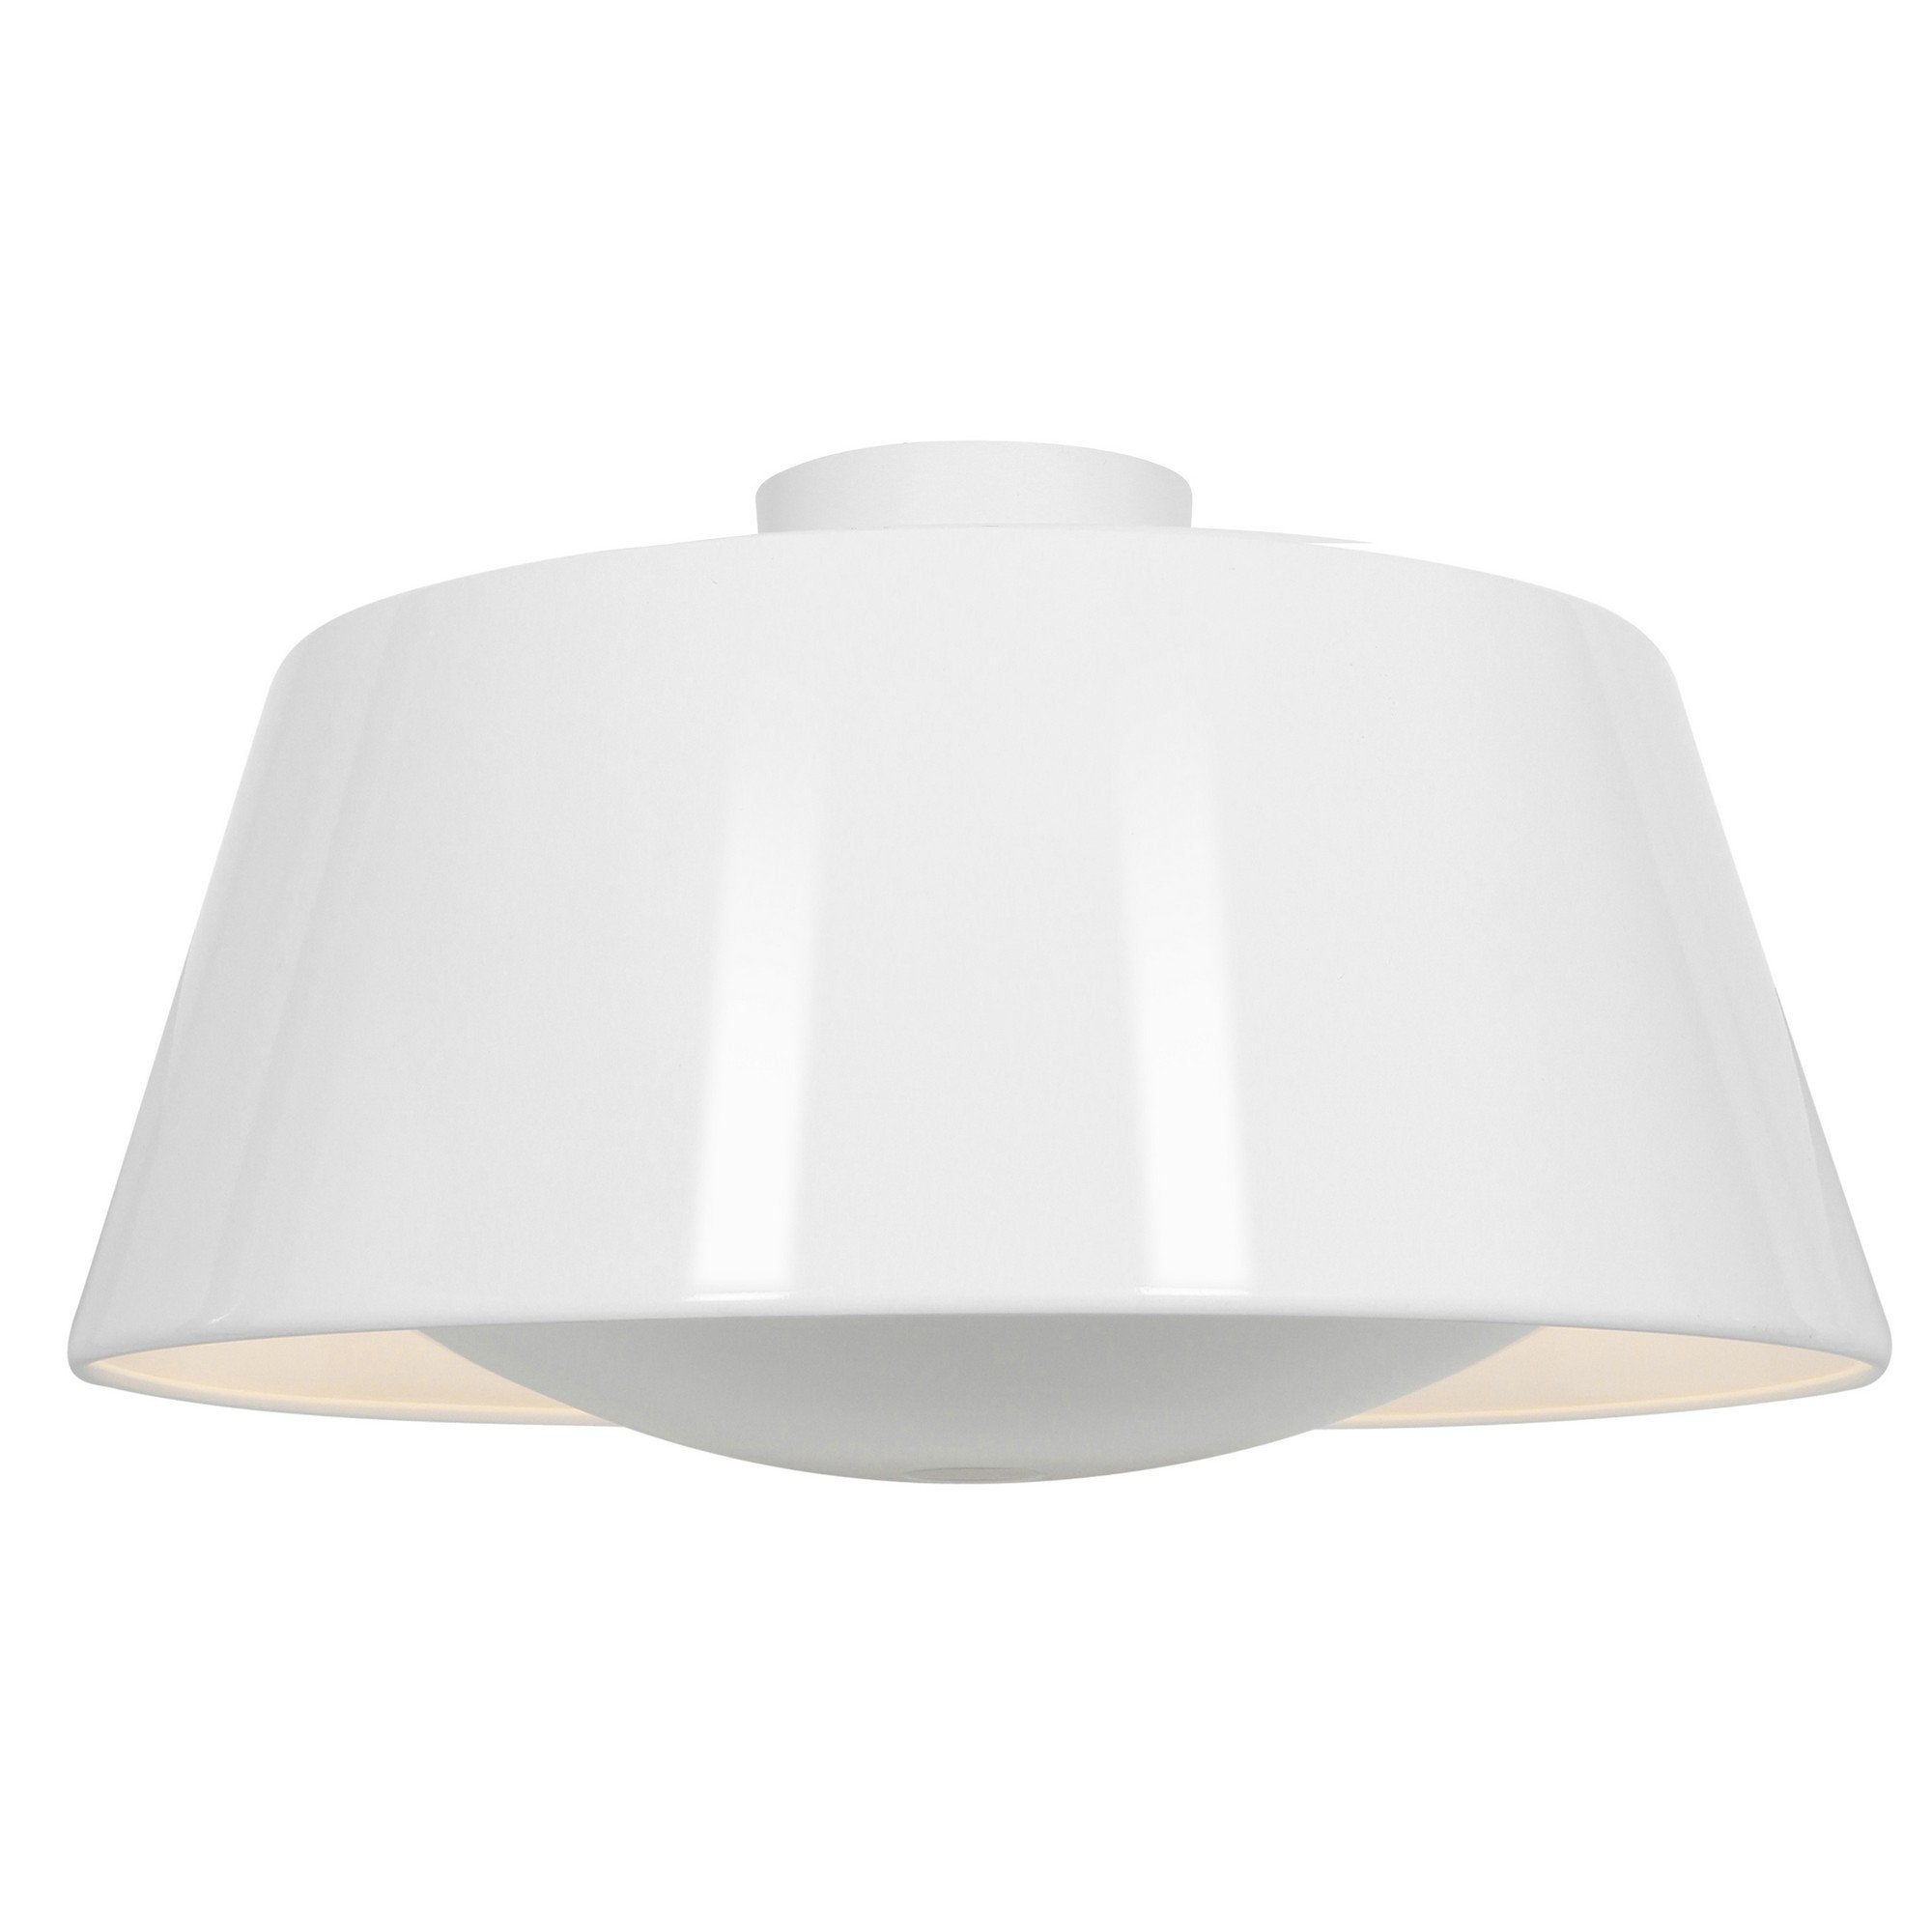 SoHo Reflective Illumination Flush Mount - Glossy White (GWH) Ceiling Access Lighting 